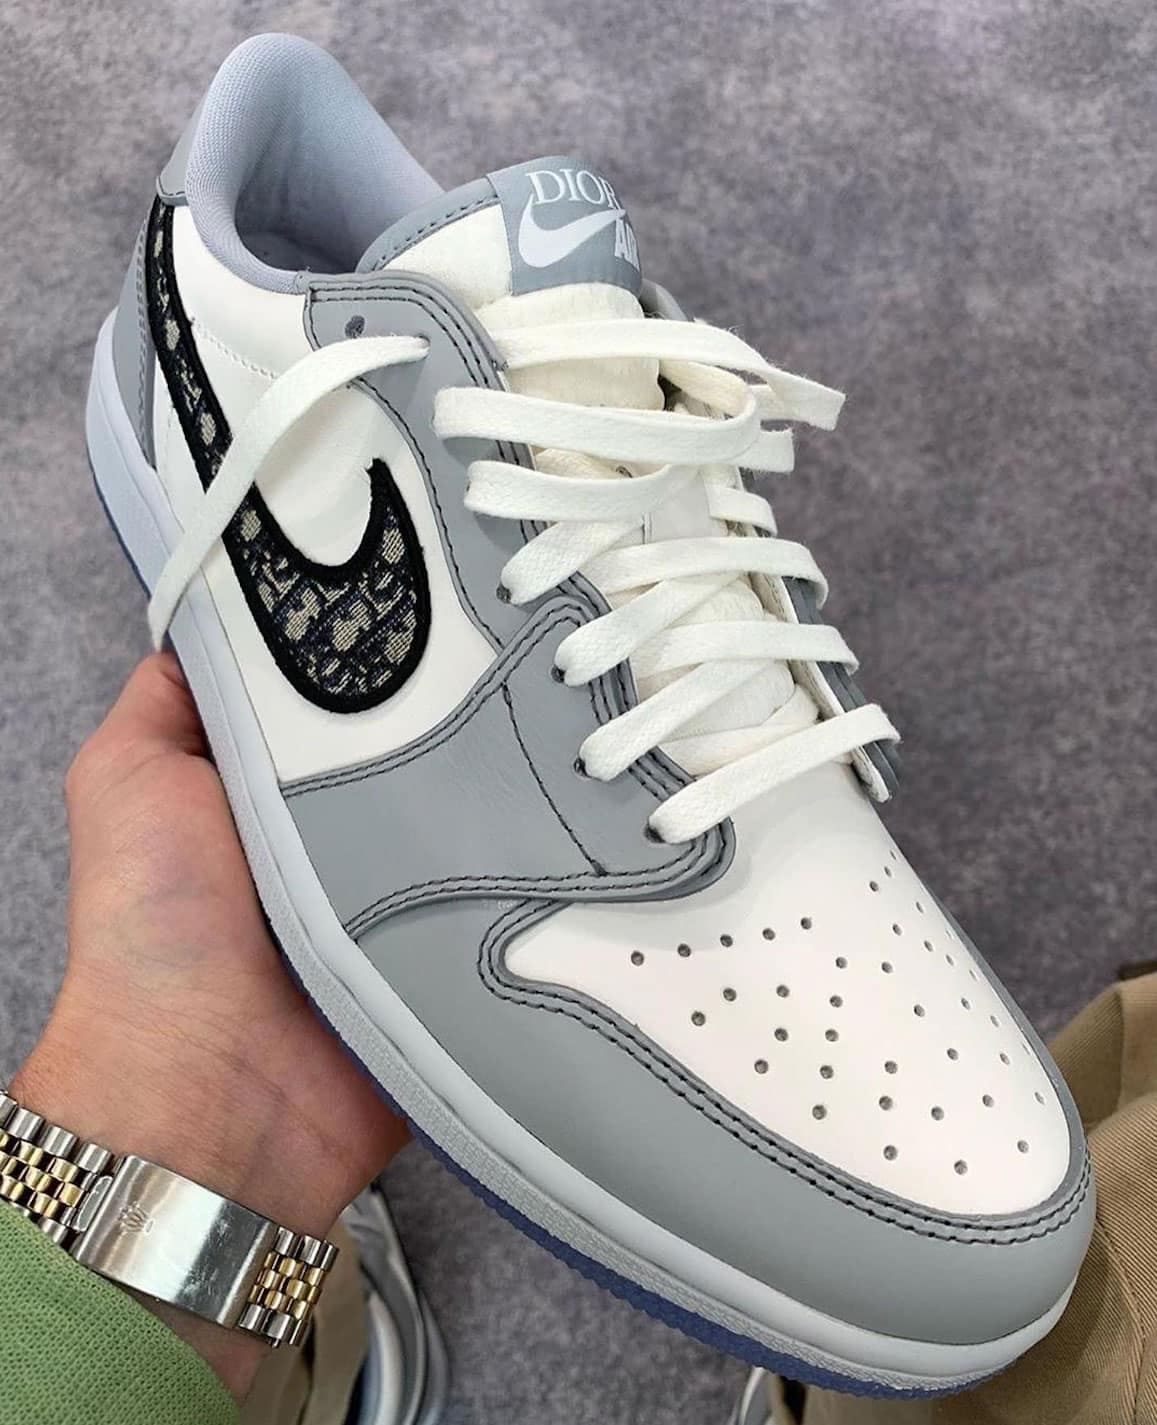 Une Dior x Air Jordan 1 Low à venir - Le Site de la Sneaker